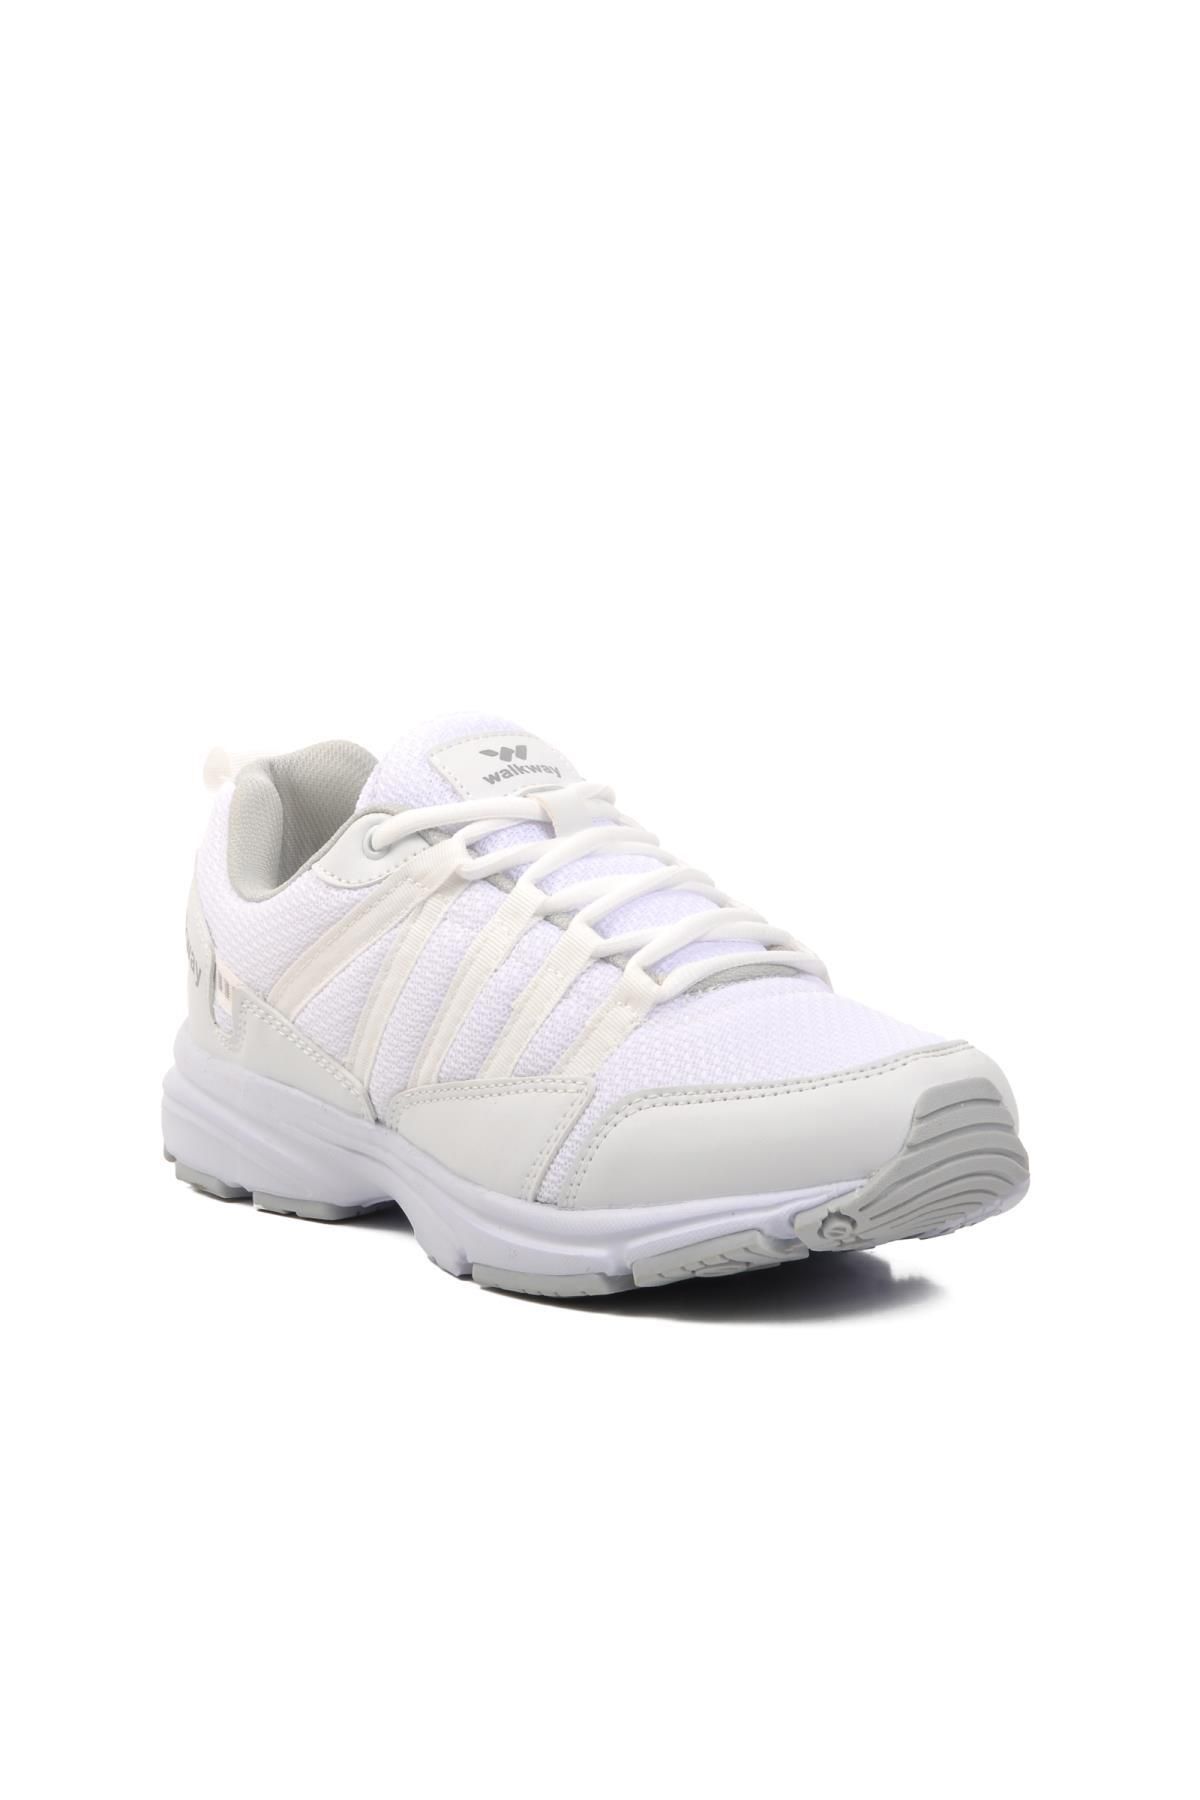 WALKWAY Nada Beyaz Unisex Spor Ayakkabı